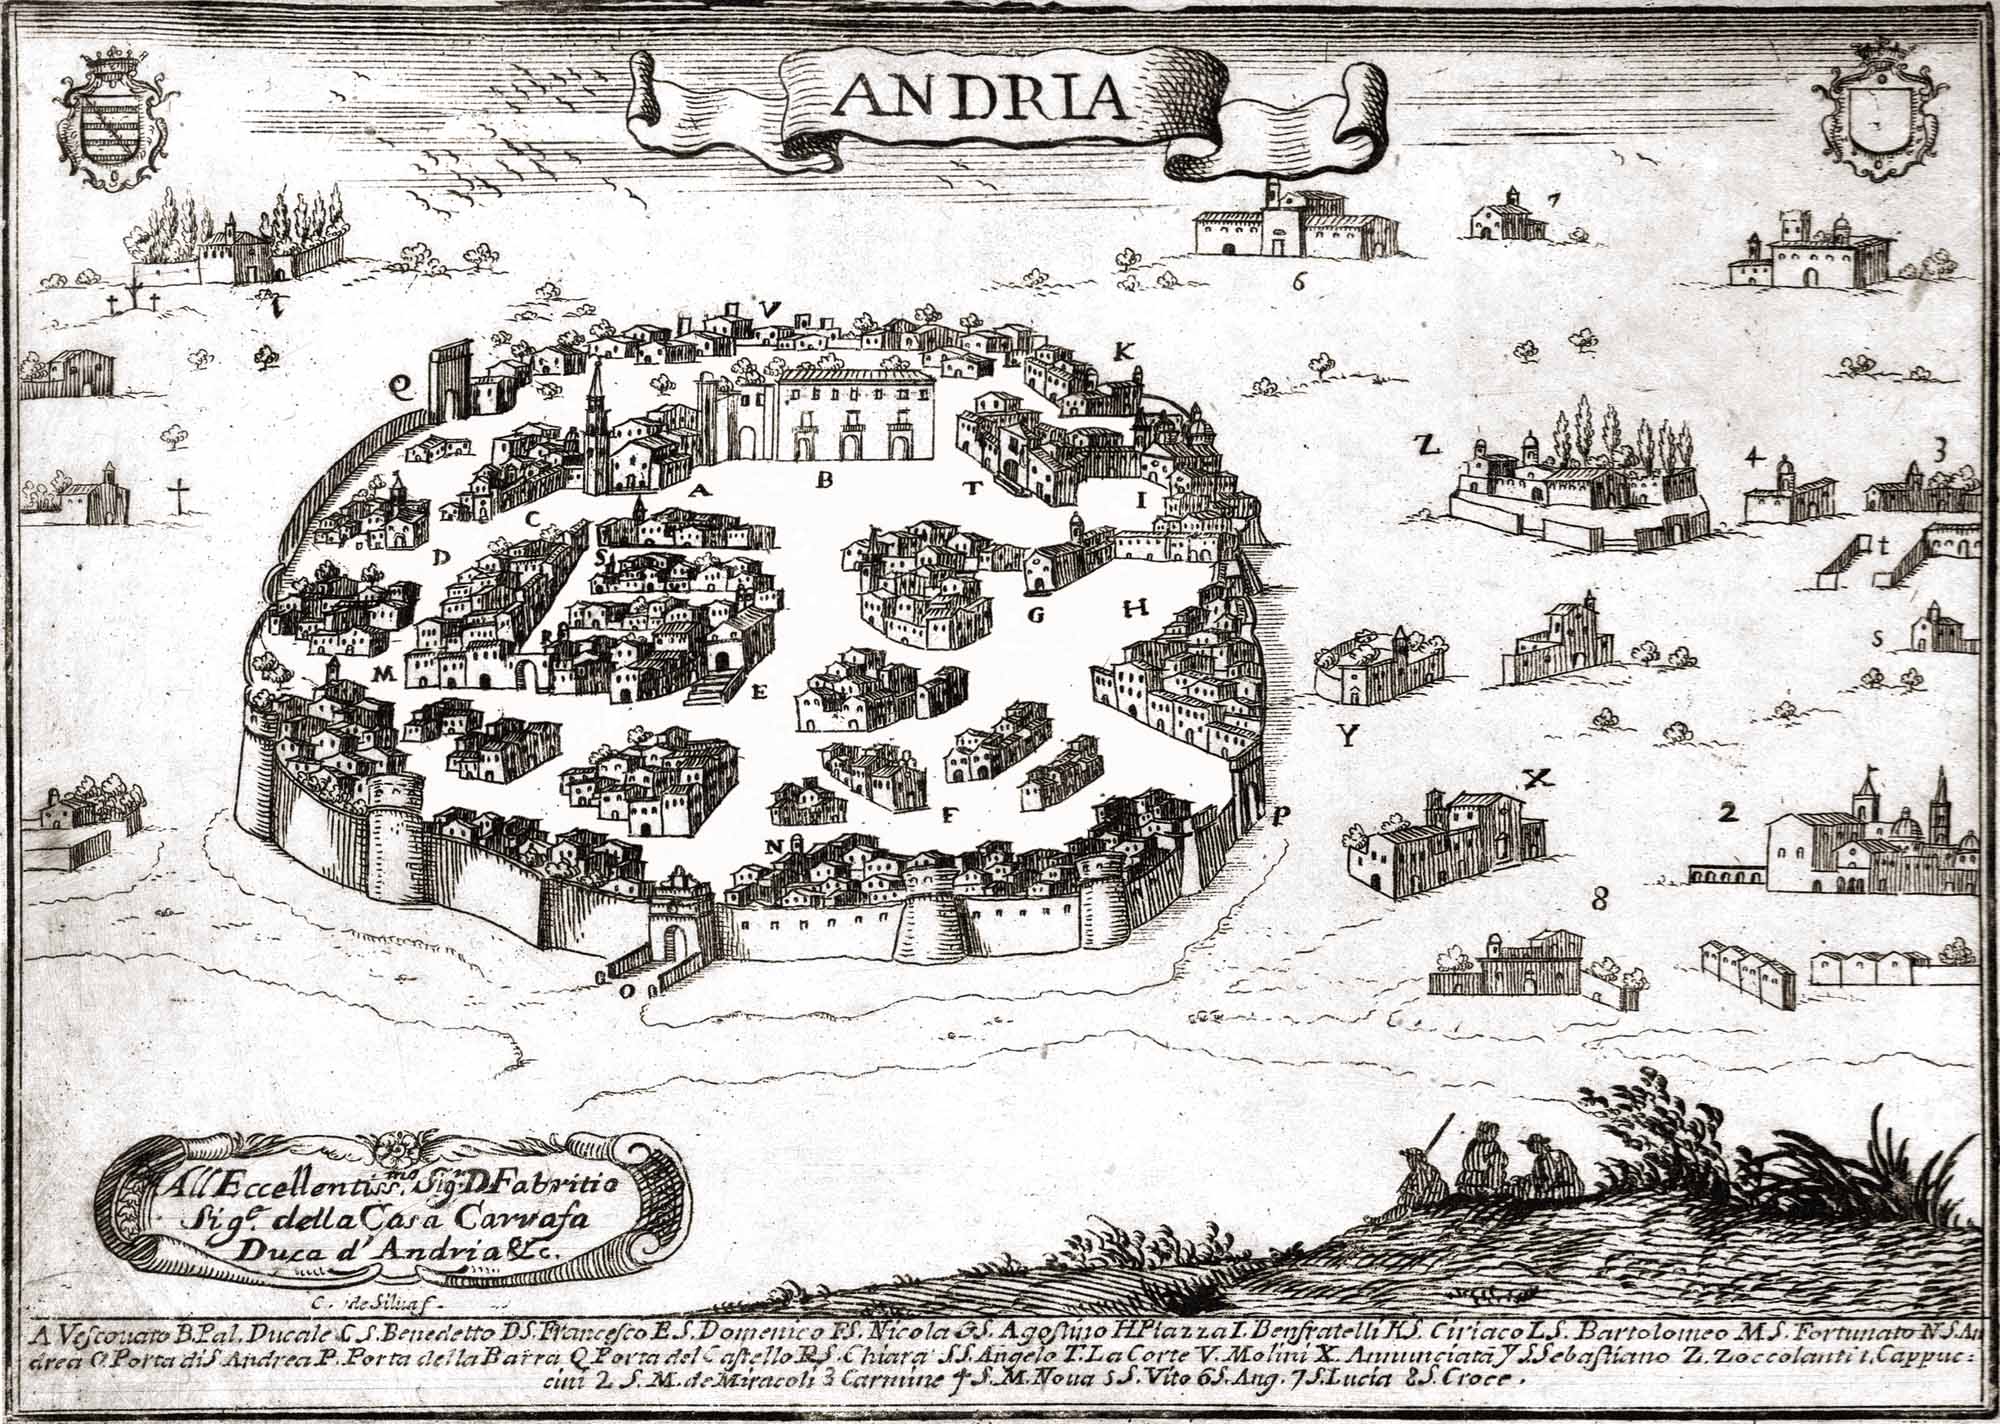 Andria, di Cassiano de Silva - tavola inserita a pag.207